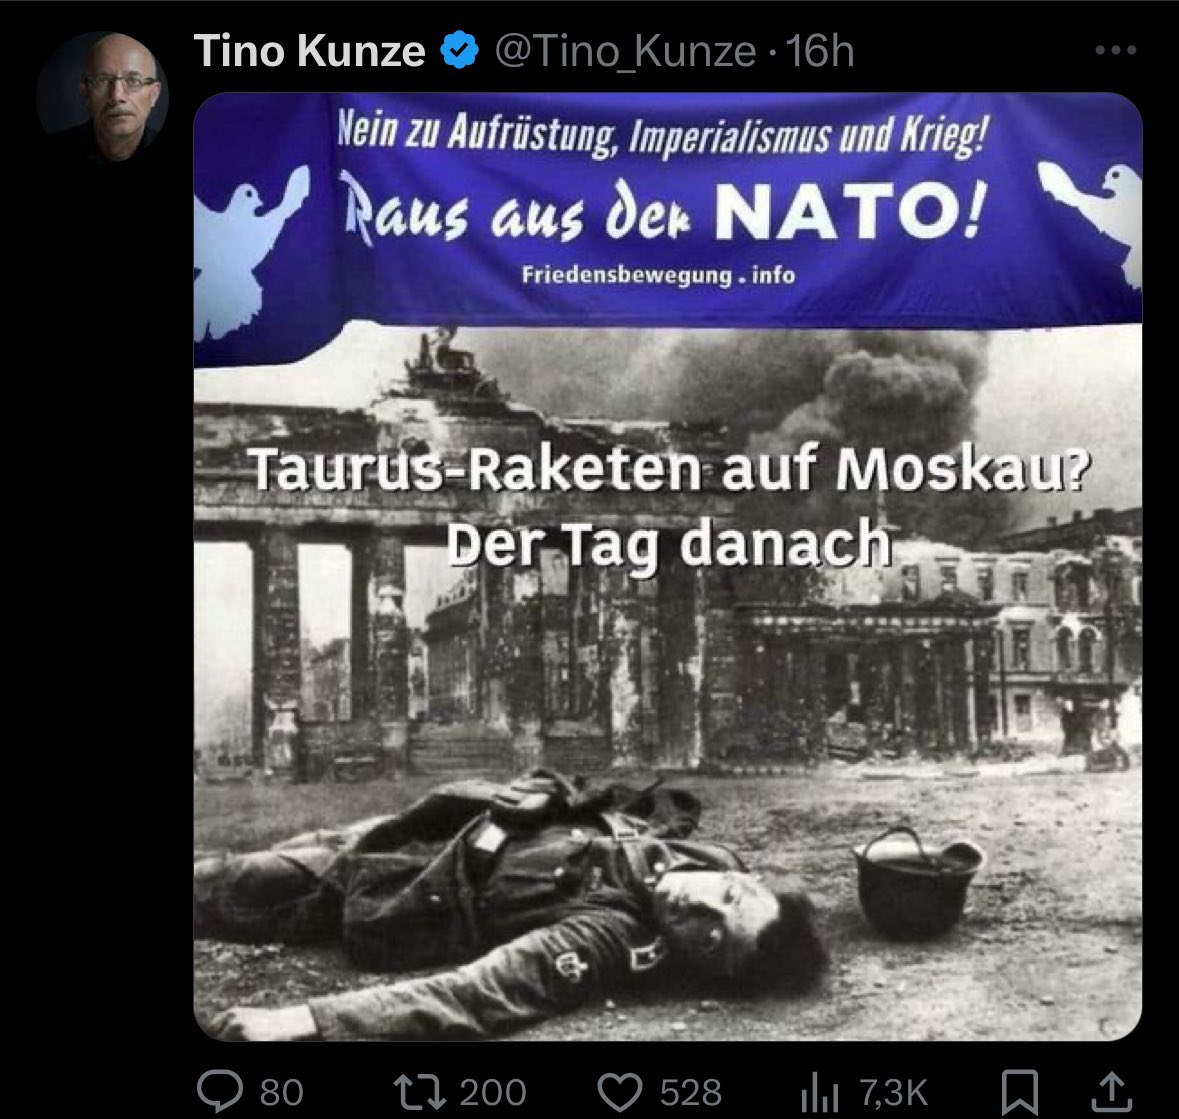 Wenn Deutschland #TaurusForUkraine liefert, liegen am nächsten Tag tote Wehrmacht soldaten vor dem Brendanburger Tor?

Ist es möglich, dass @Tino_Kunze auch Nicht mehr ganz frisch im Kopf ist?

VielleicHt sollte mal jemand dem Pflegepersonal bescheid geben!

#AfDmachtDumm